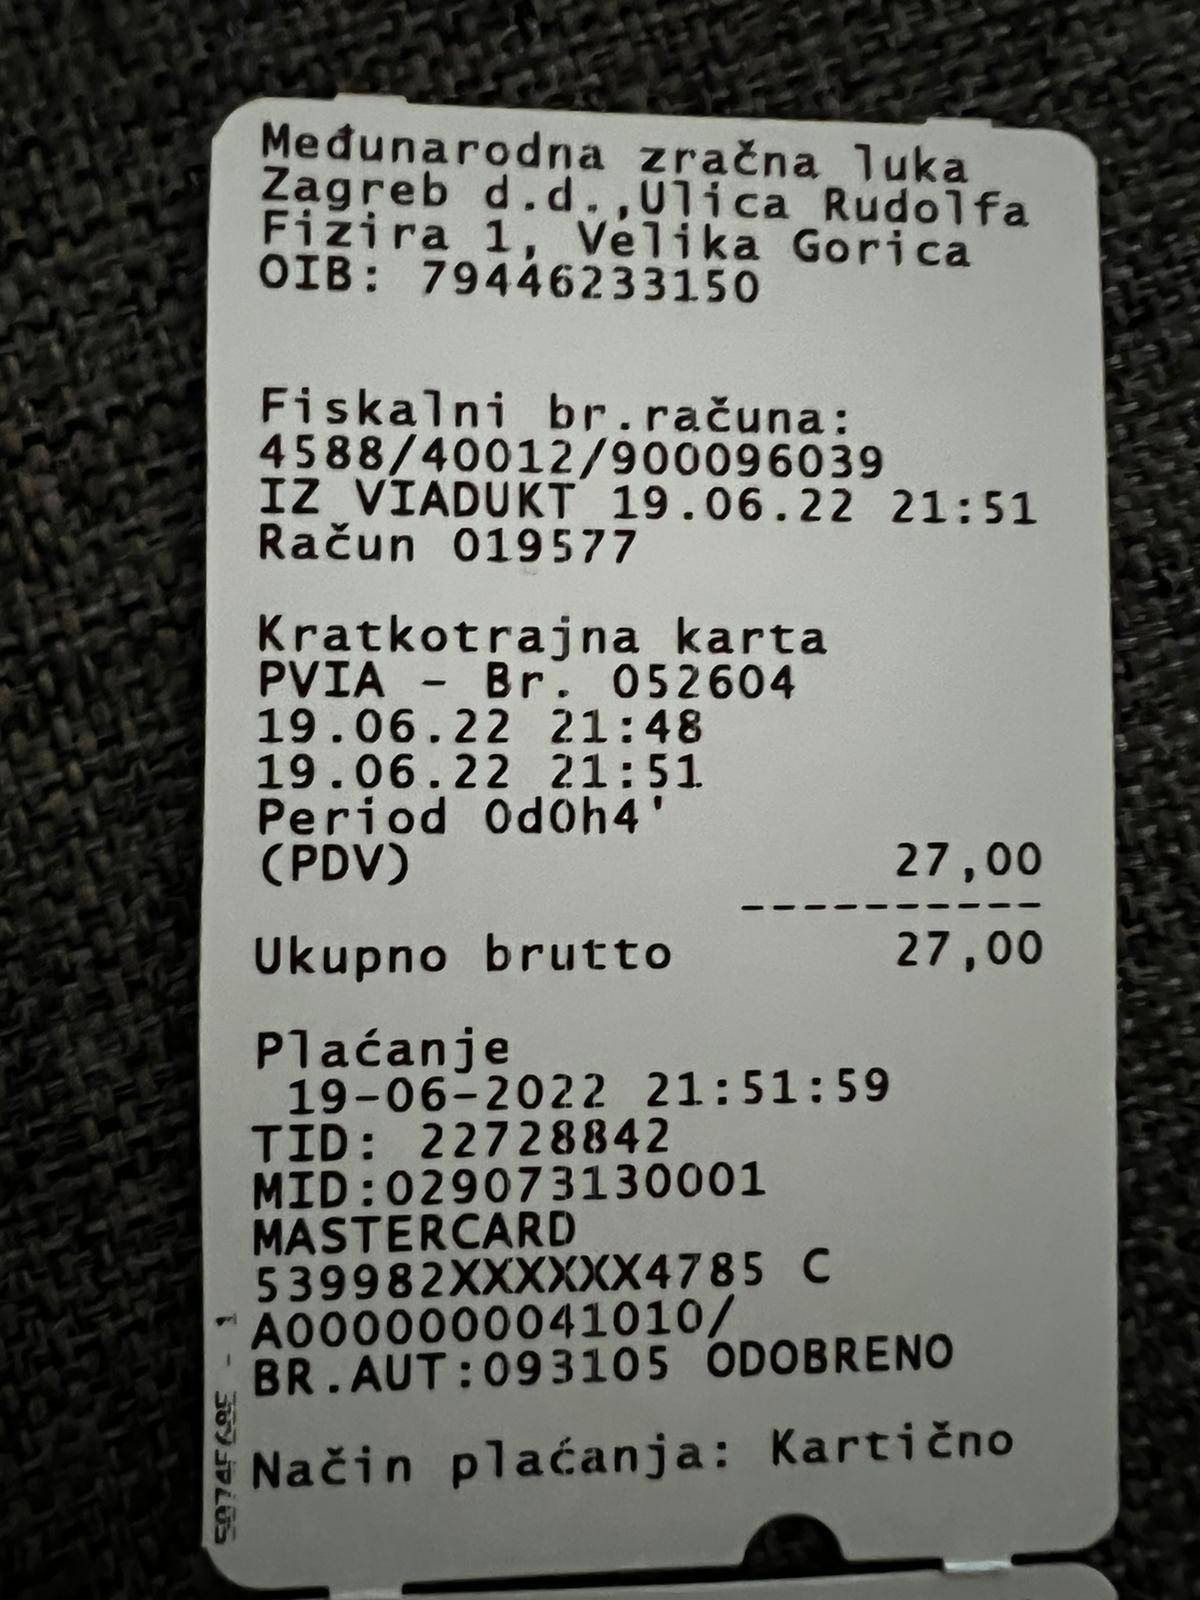 Zagreb: '60 sekundi parkinga platio sam 6,75 kuna! A trebalo je biti besplatno. Šokiran sam'